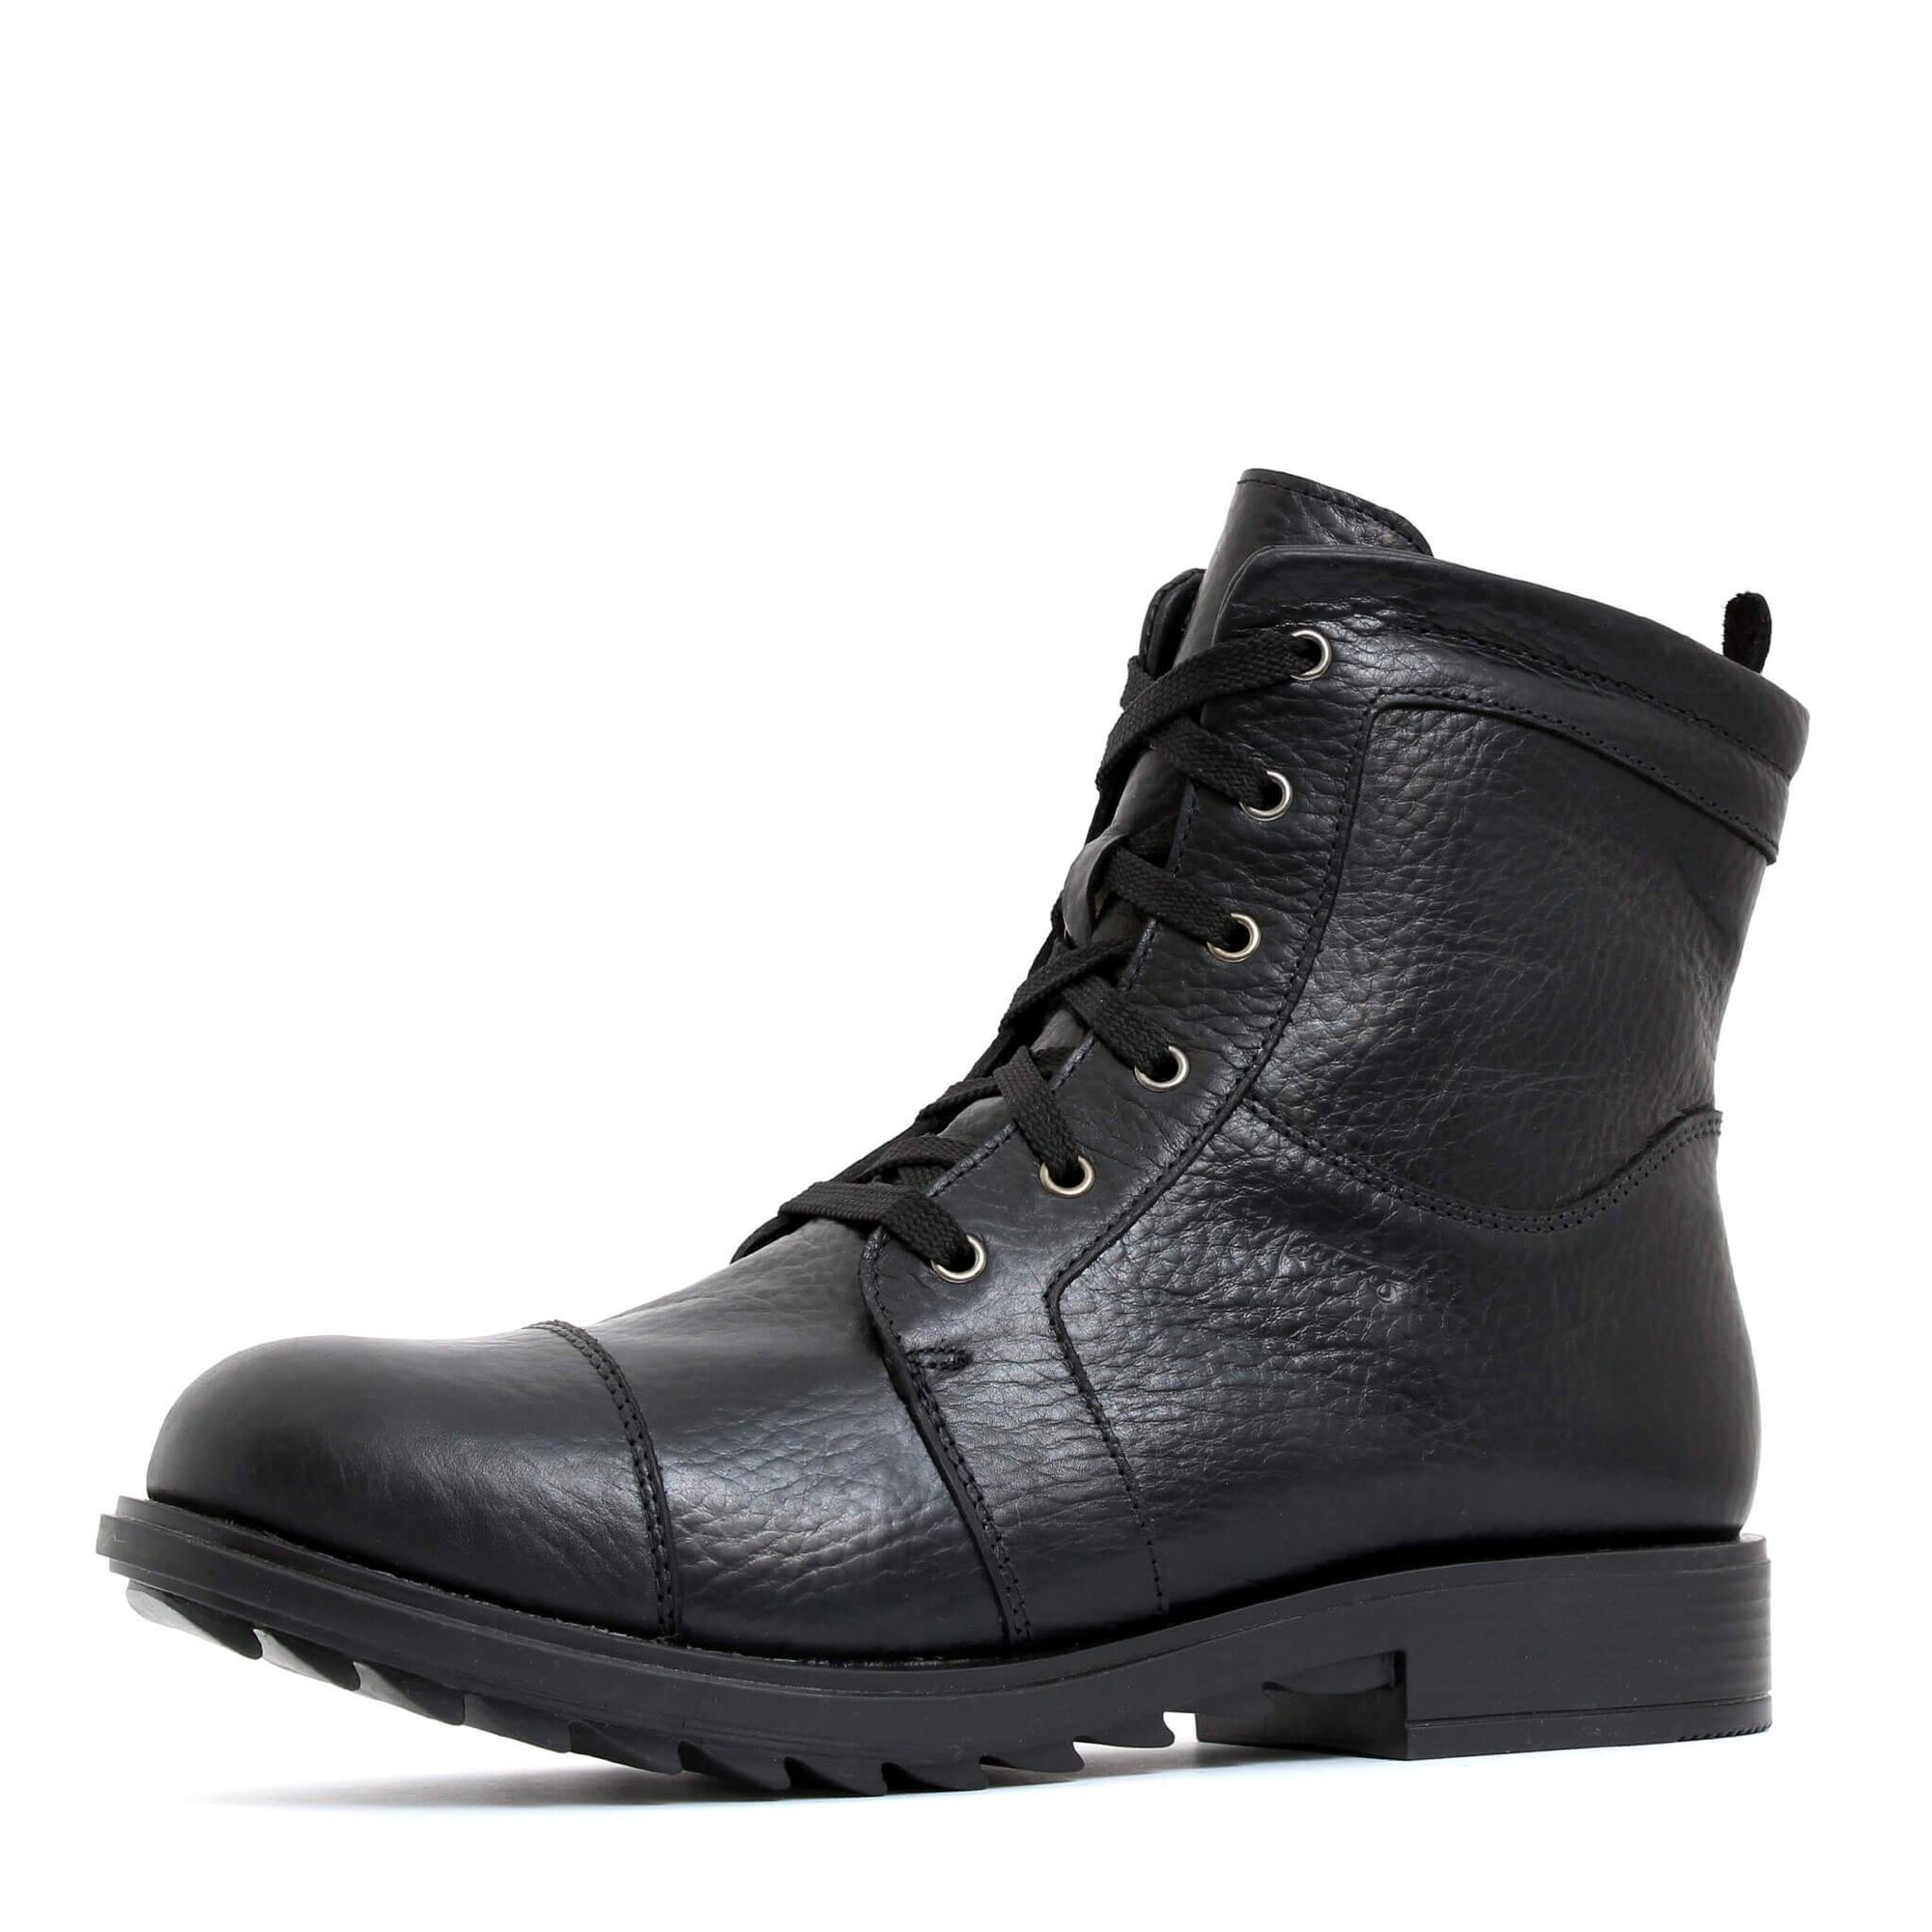 Mister winter boot for men - Black